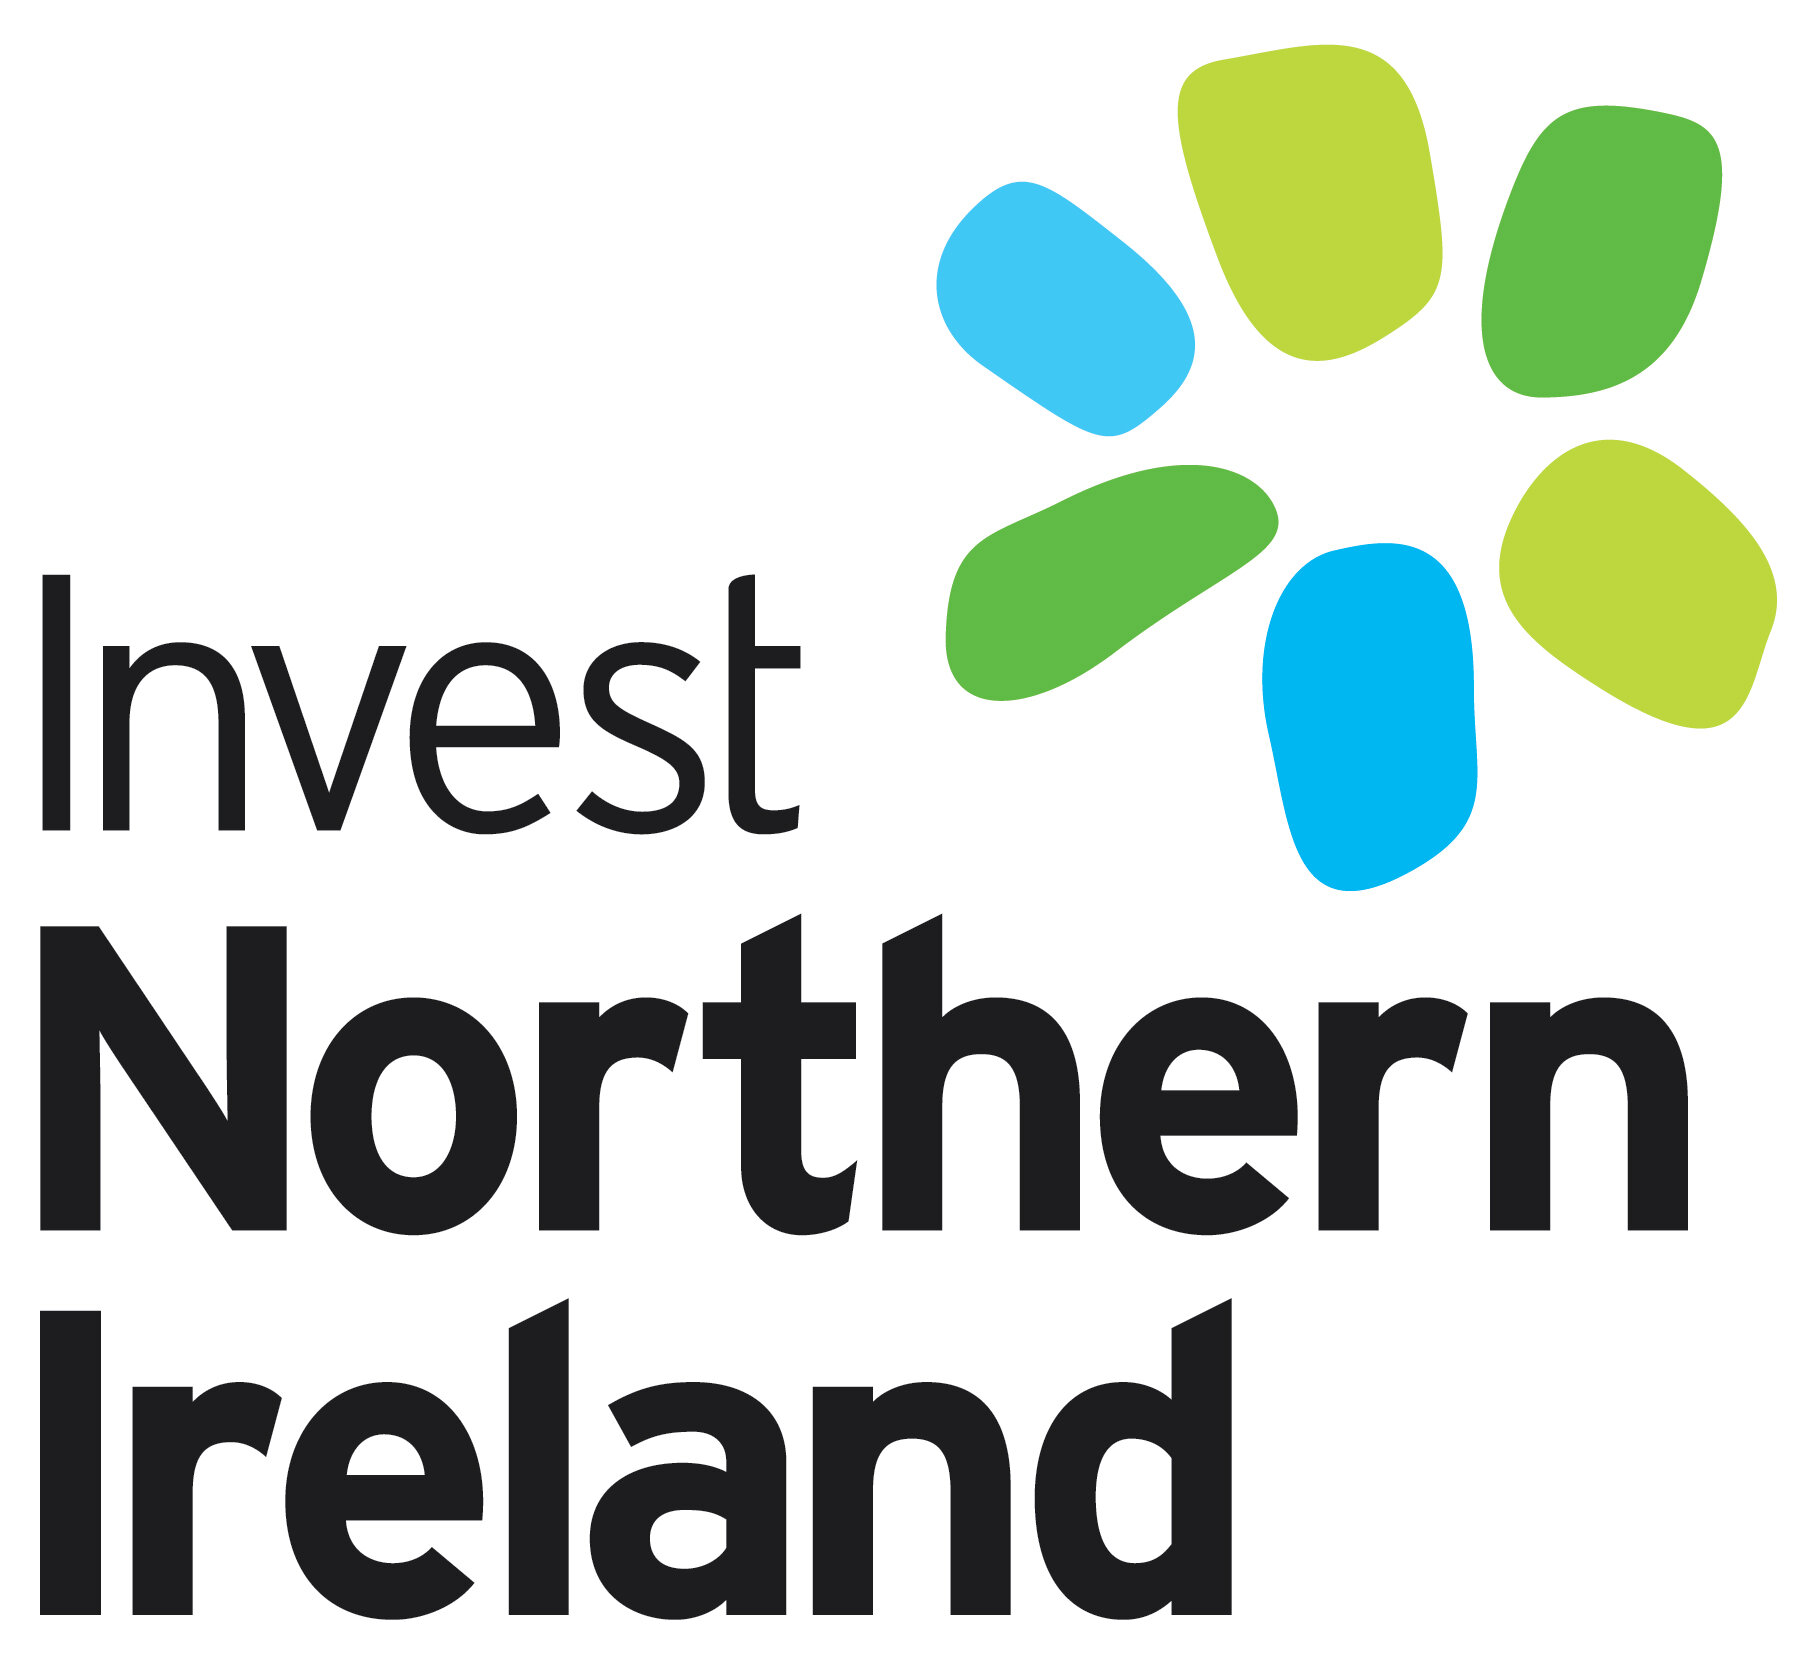 Invest Northern Ireland - logo.jpg